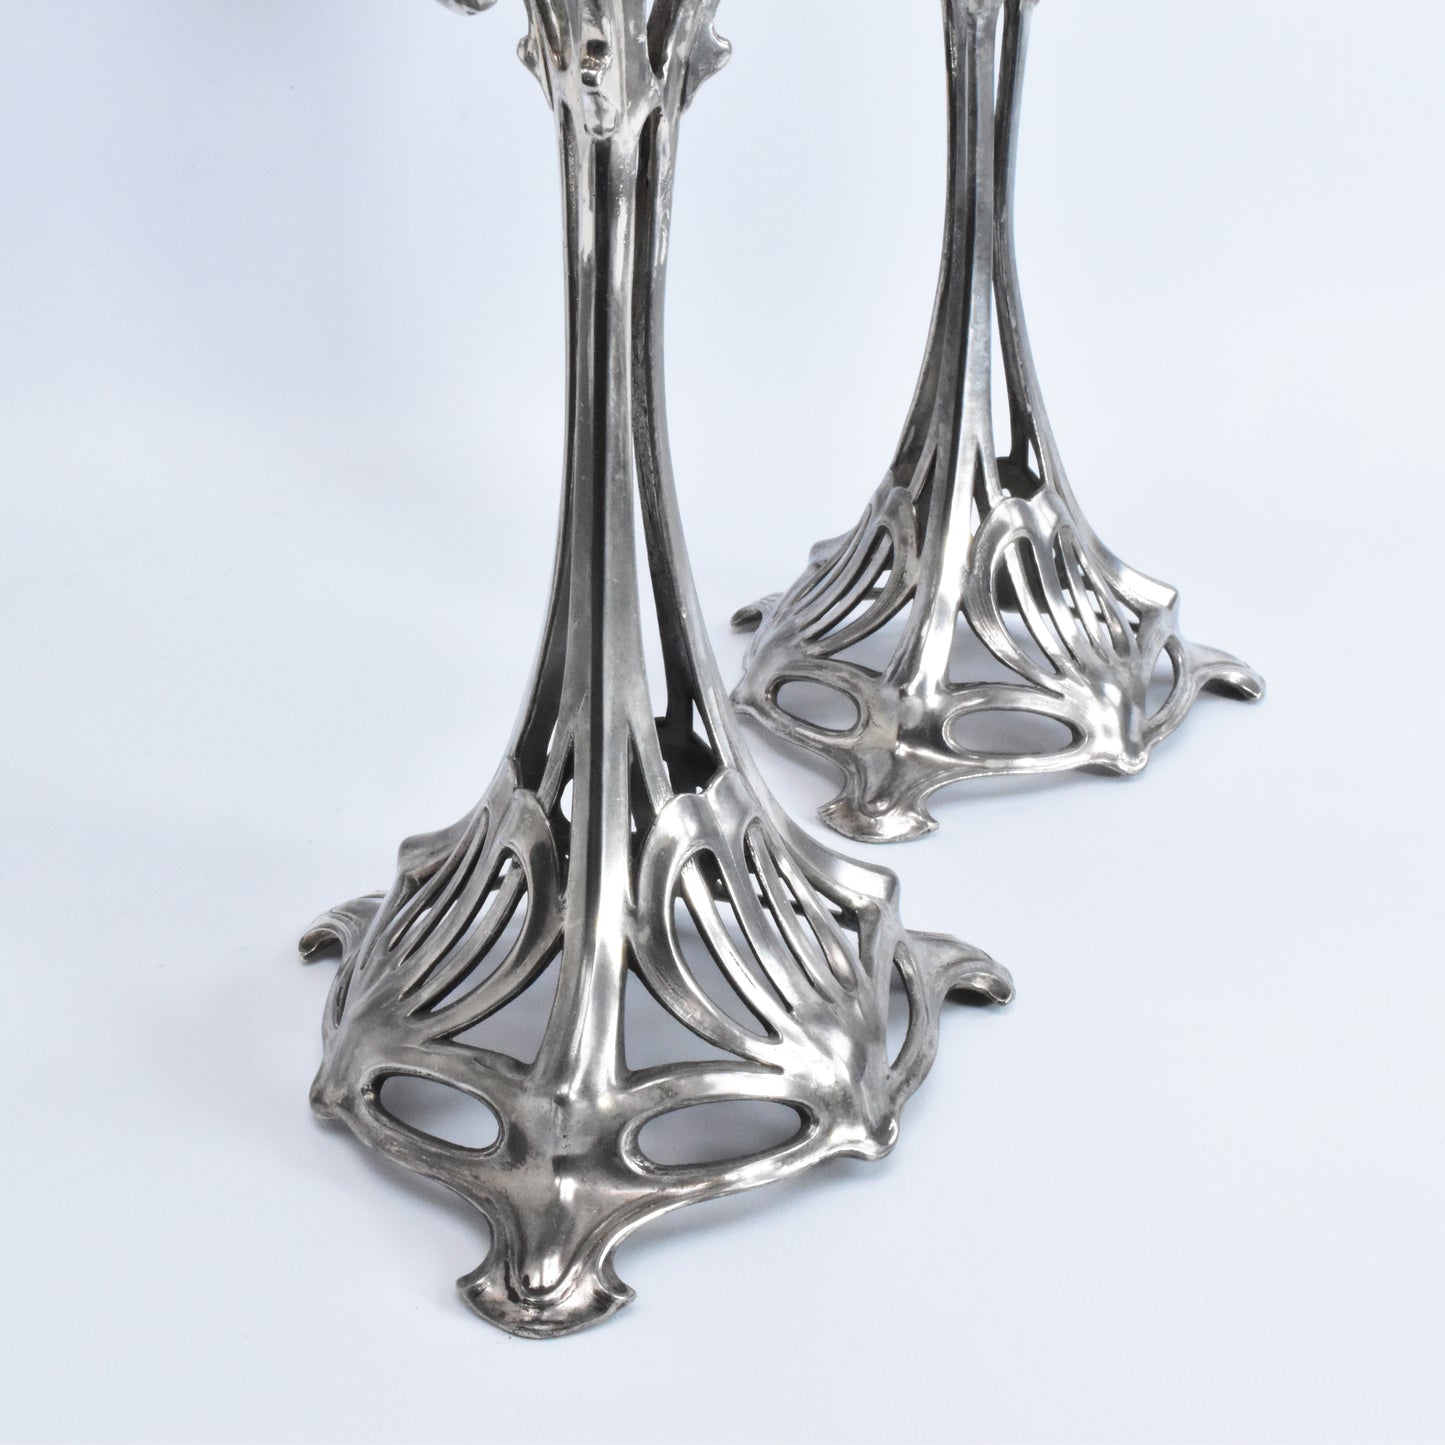 Art Nouveau candlestick set